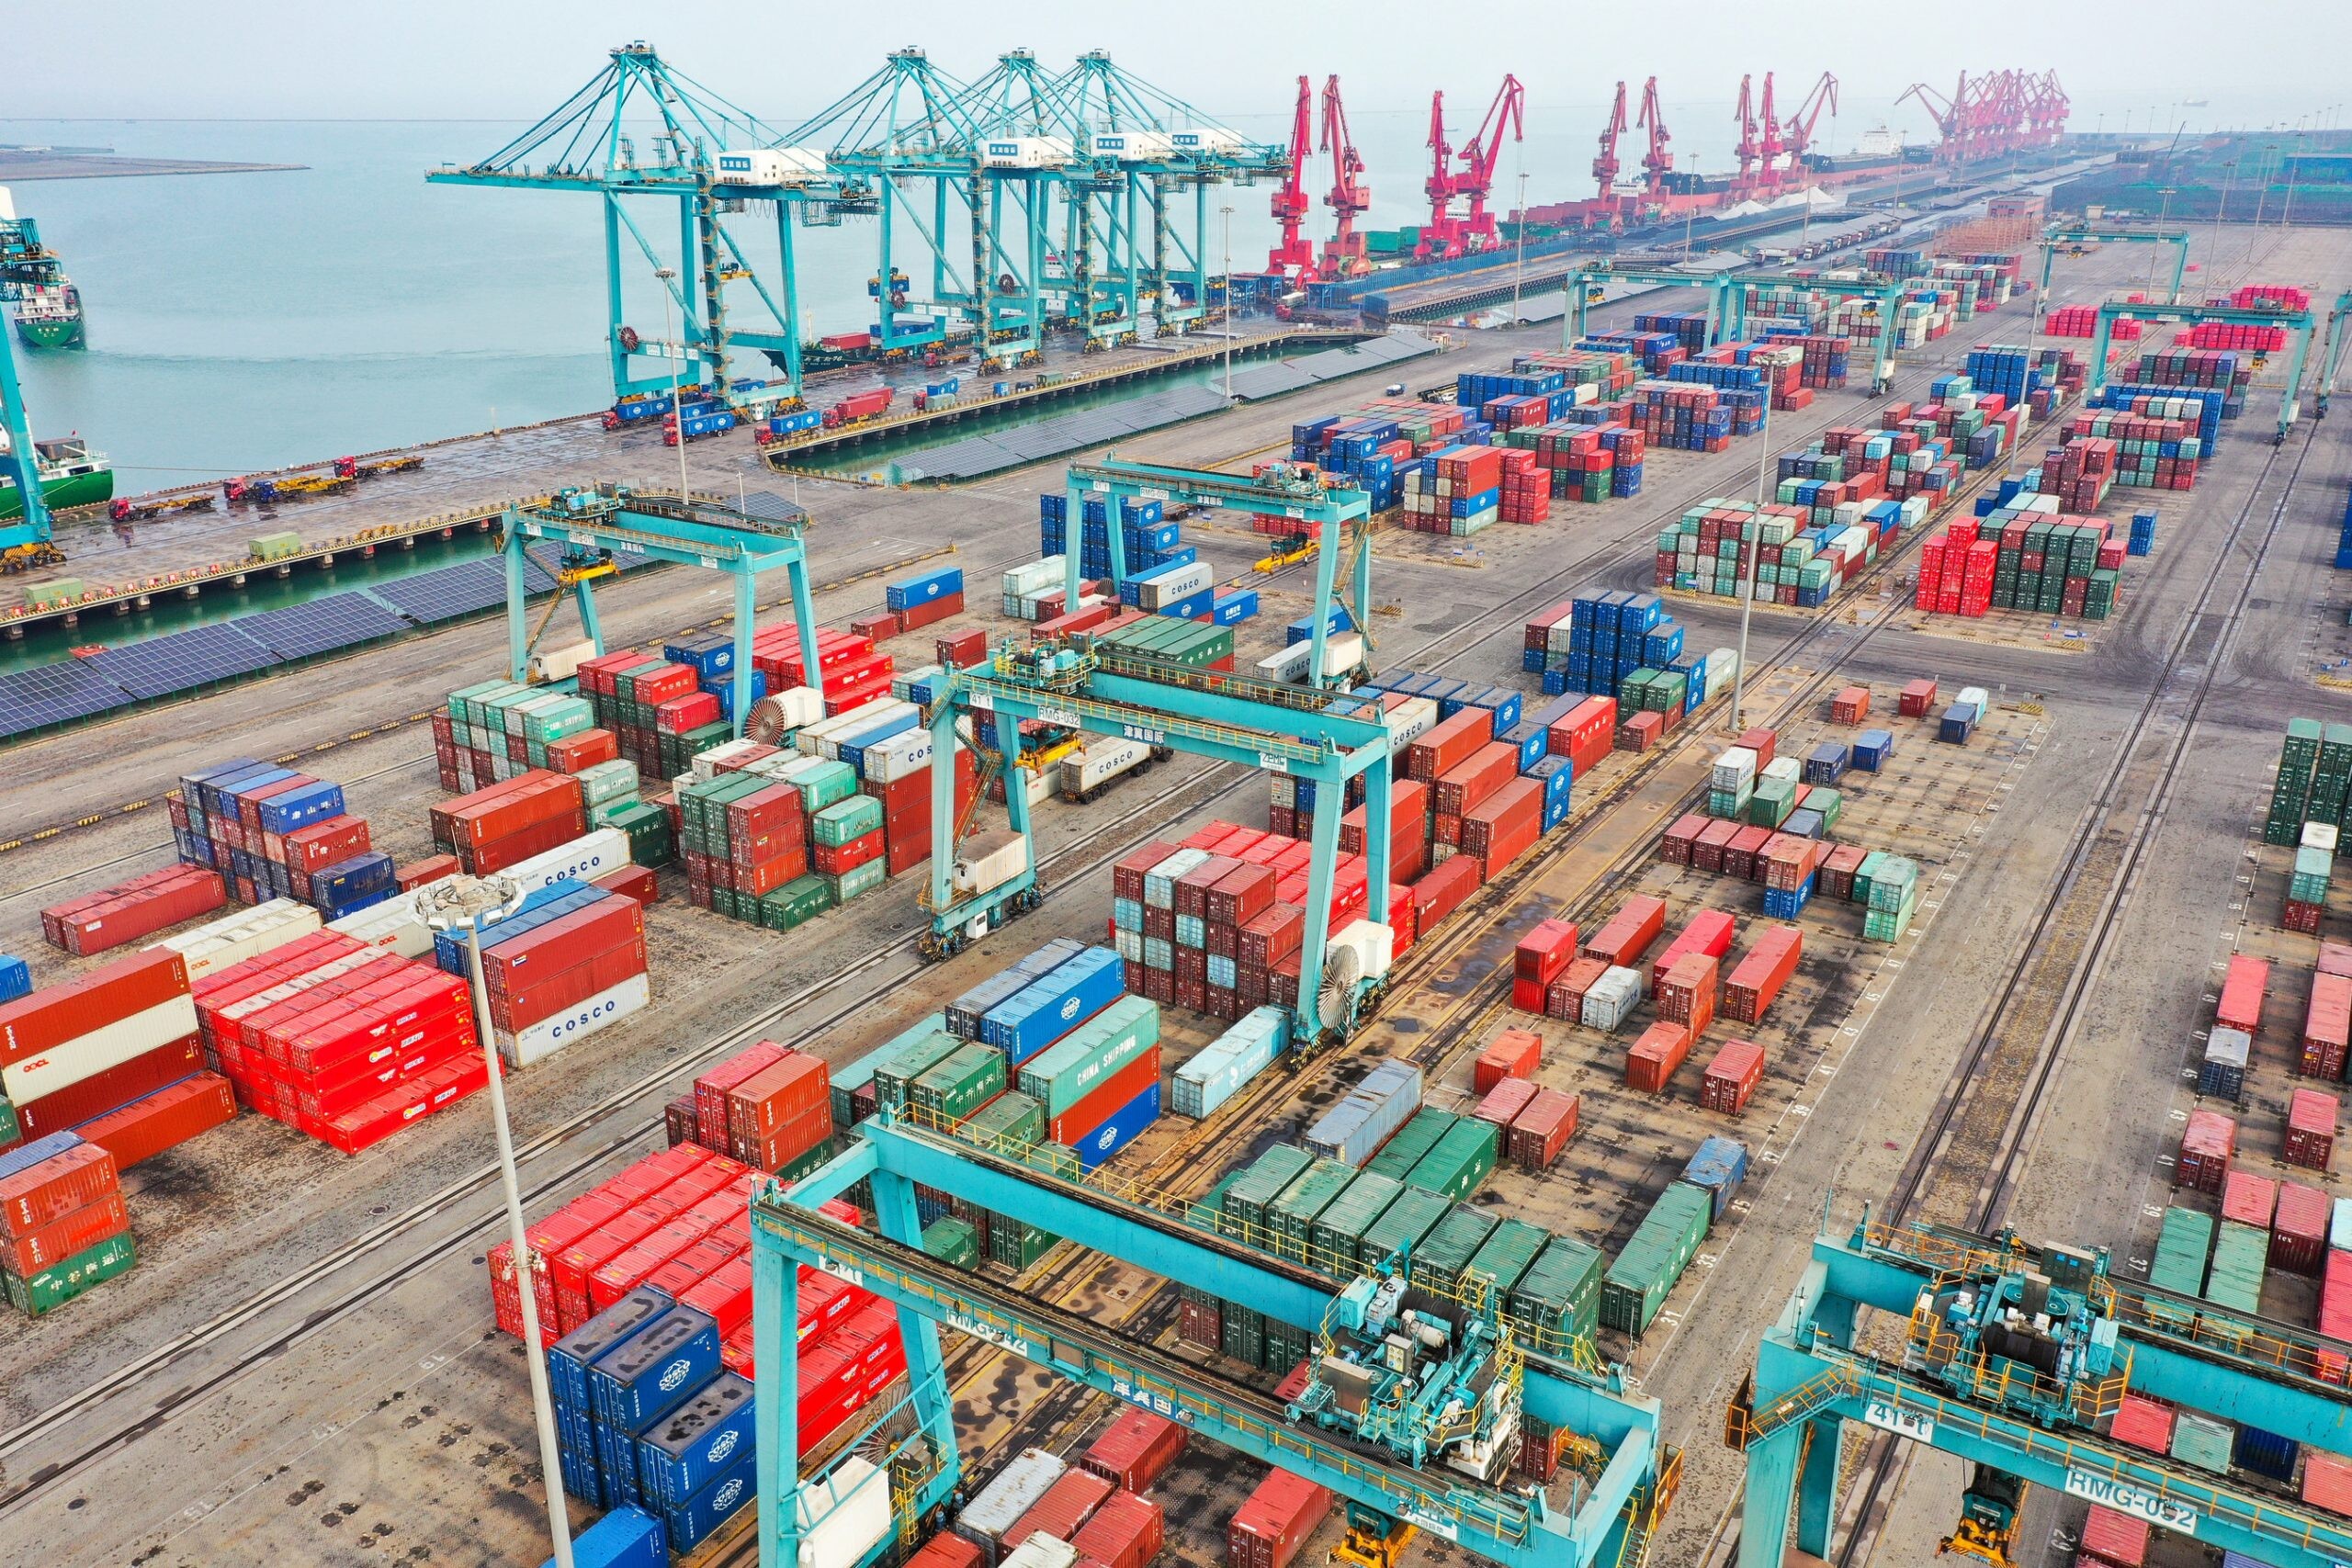 ท่าเรือหวงหัว ท่าเรือขนส่งถ่านหินที่ใหญ่ที่สุดของจีน เปิดเส้นทางขนส่งตู้คอนเทนเนอร์ระหว่างประเทศ